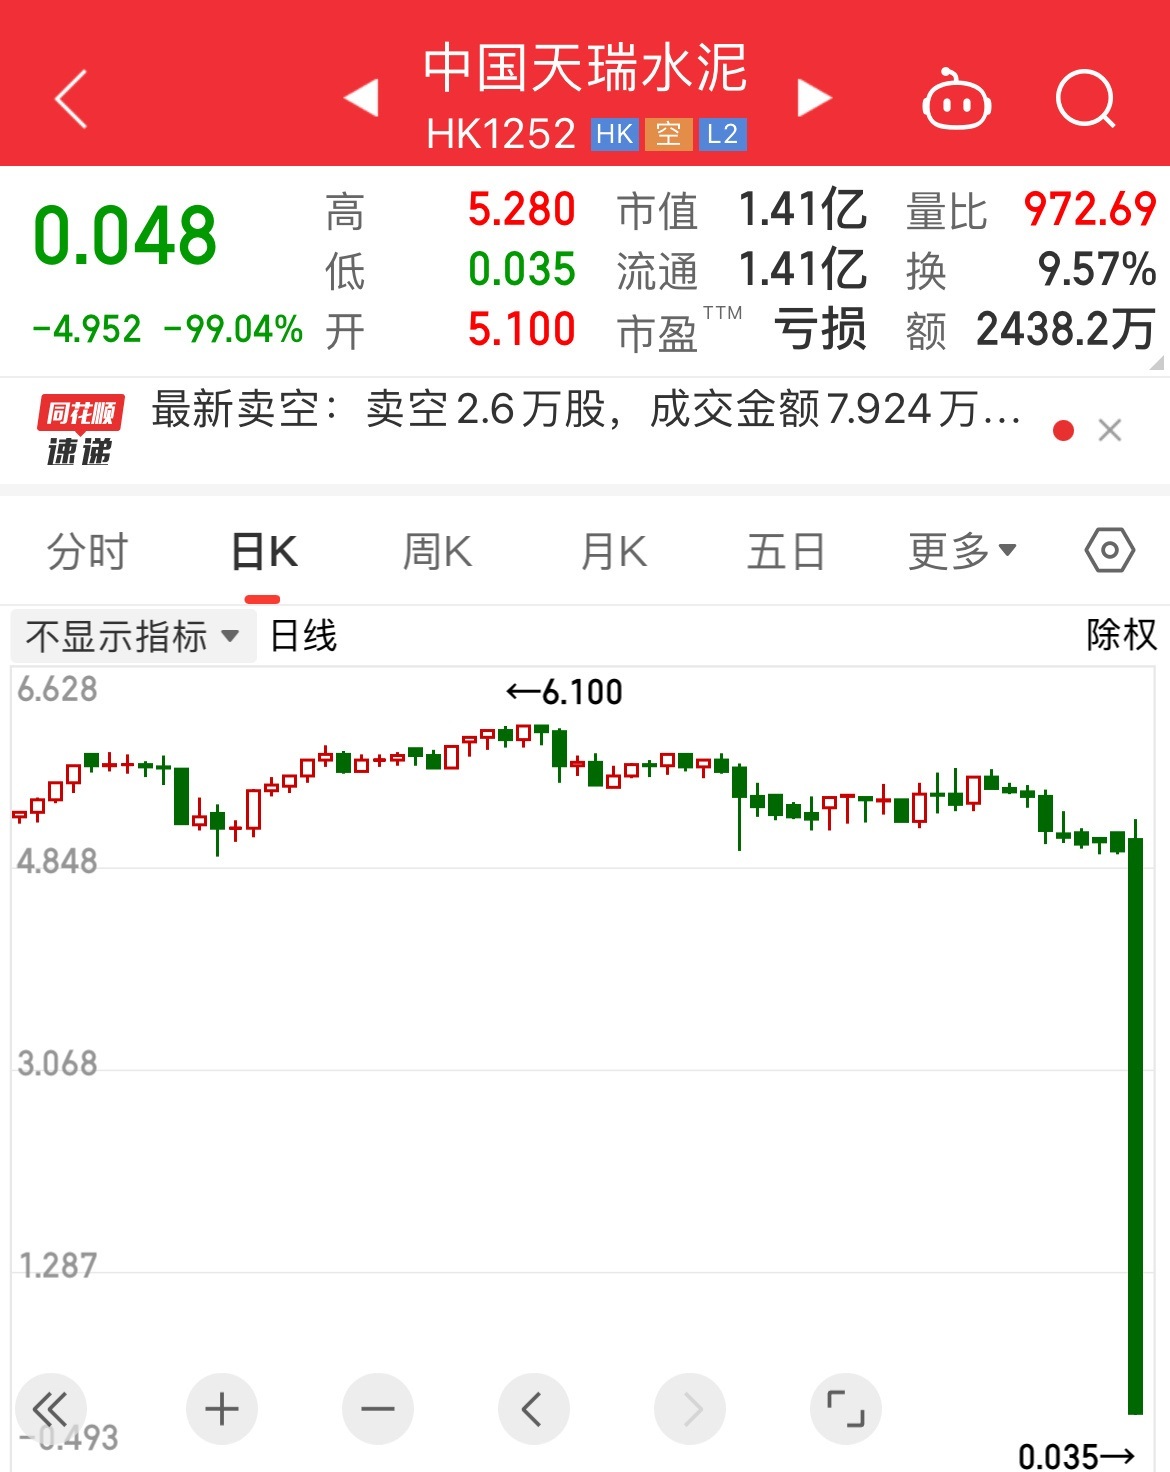 中國天瑞水泥股價暴跌99% 單日市值蒸發597億元